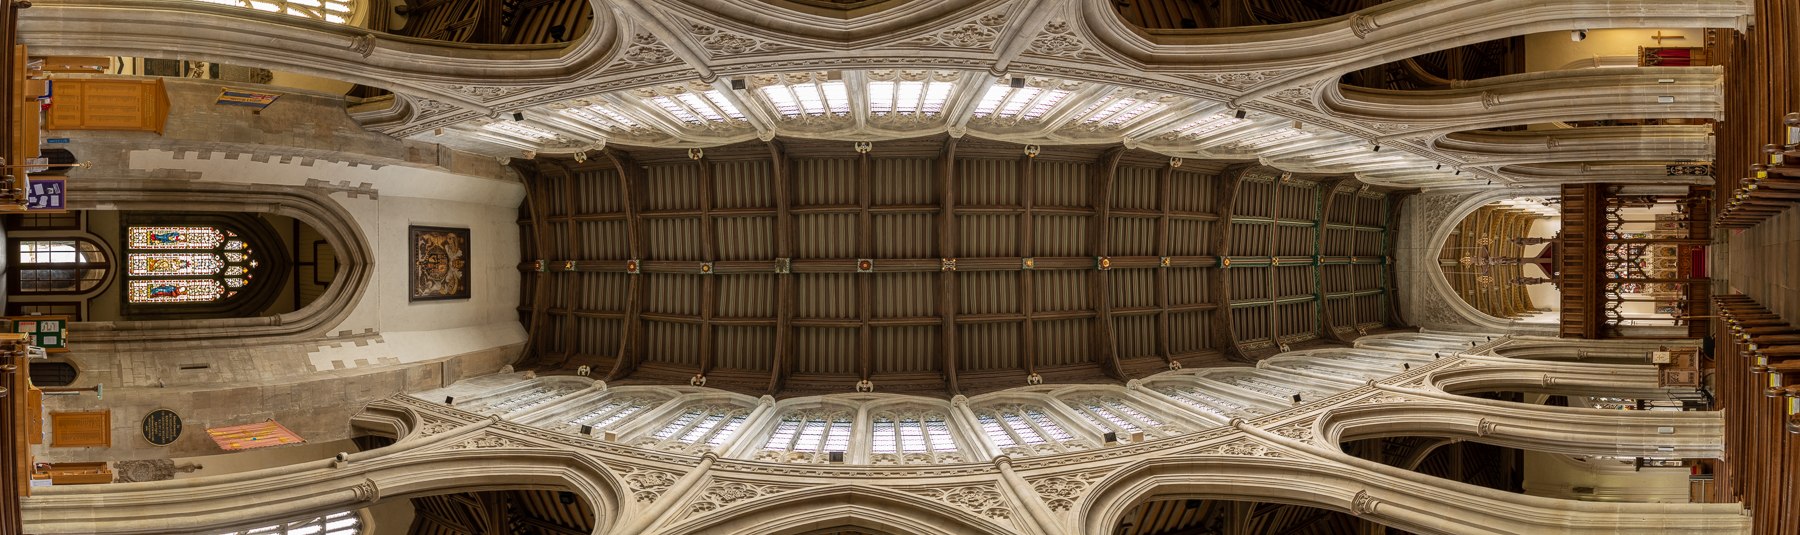 St Mary's Church Ceiling Iain 